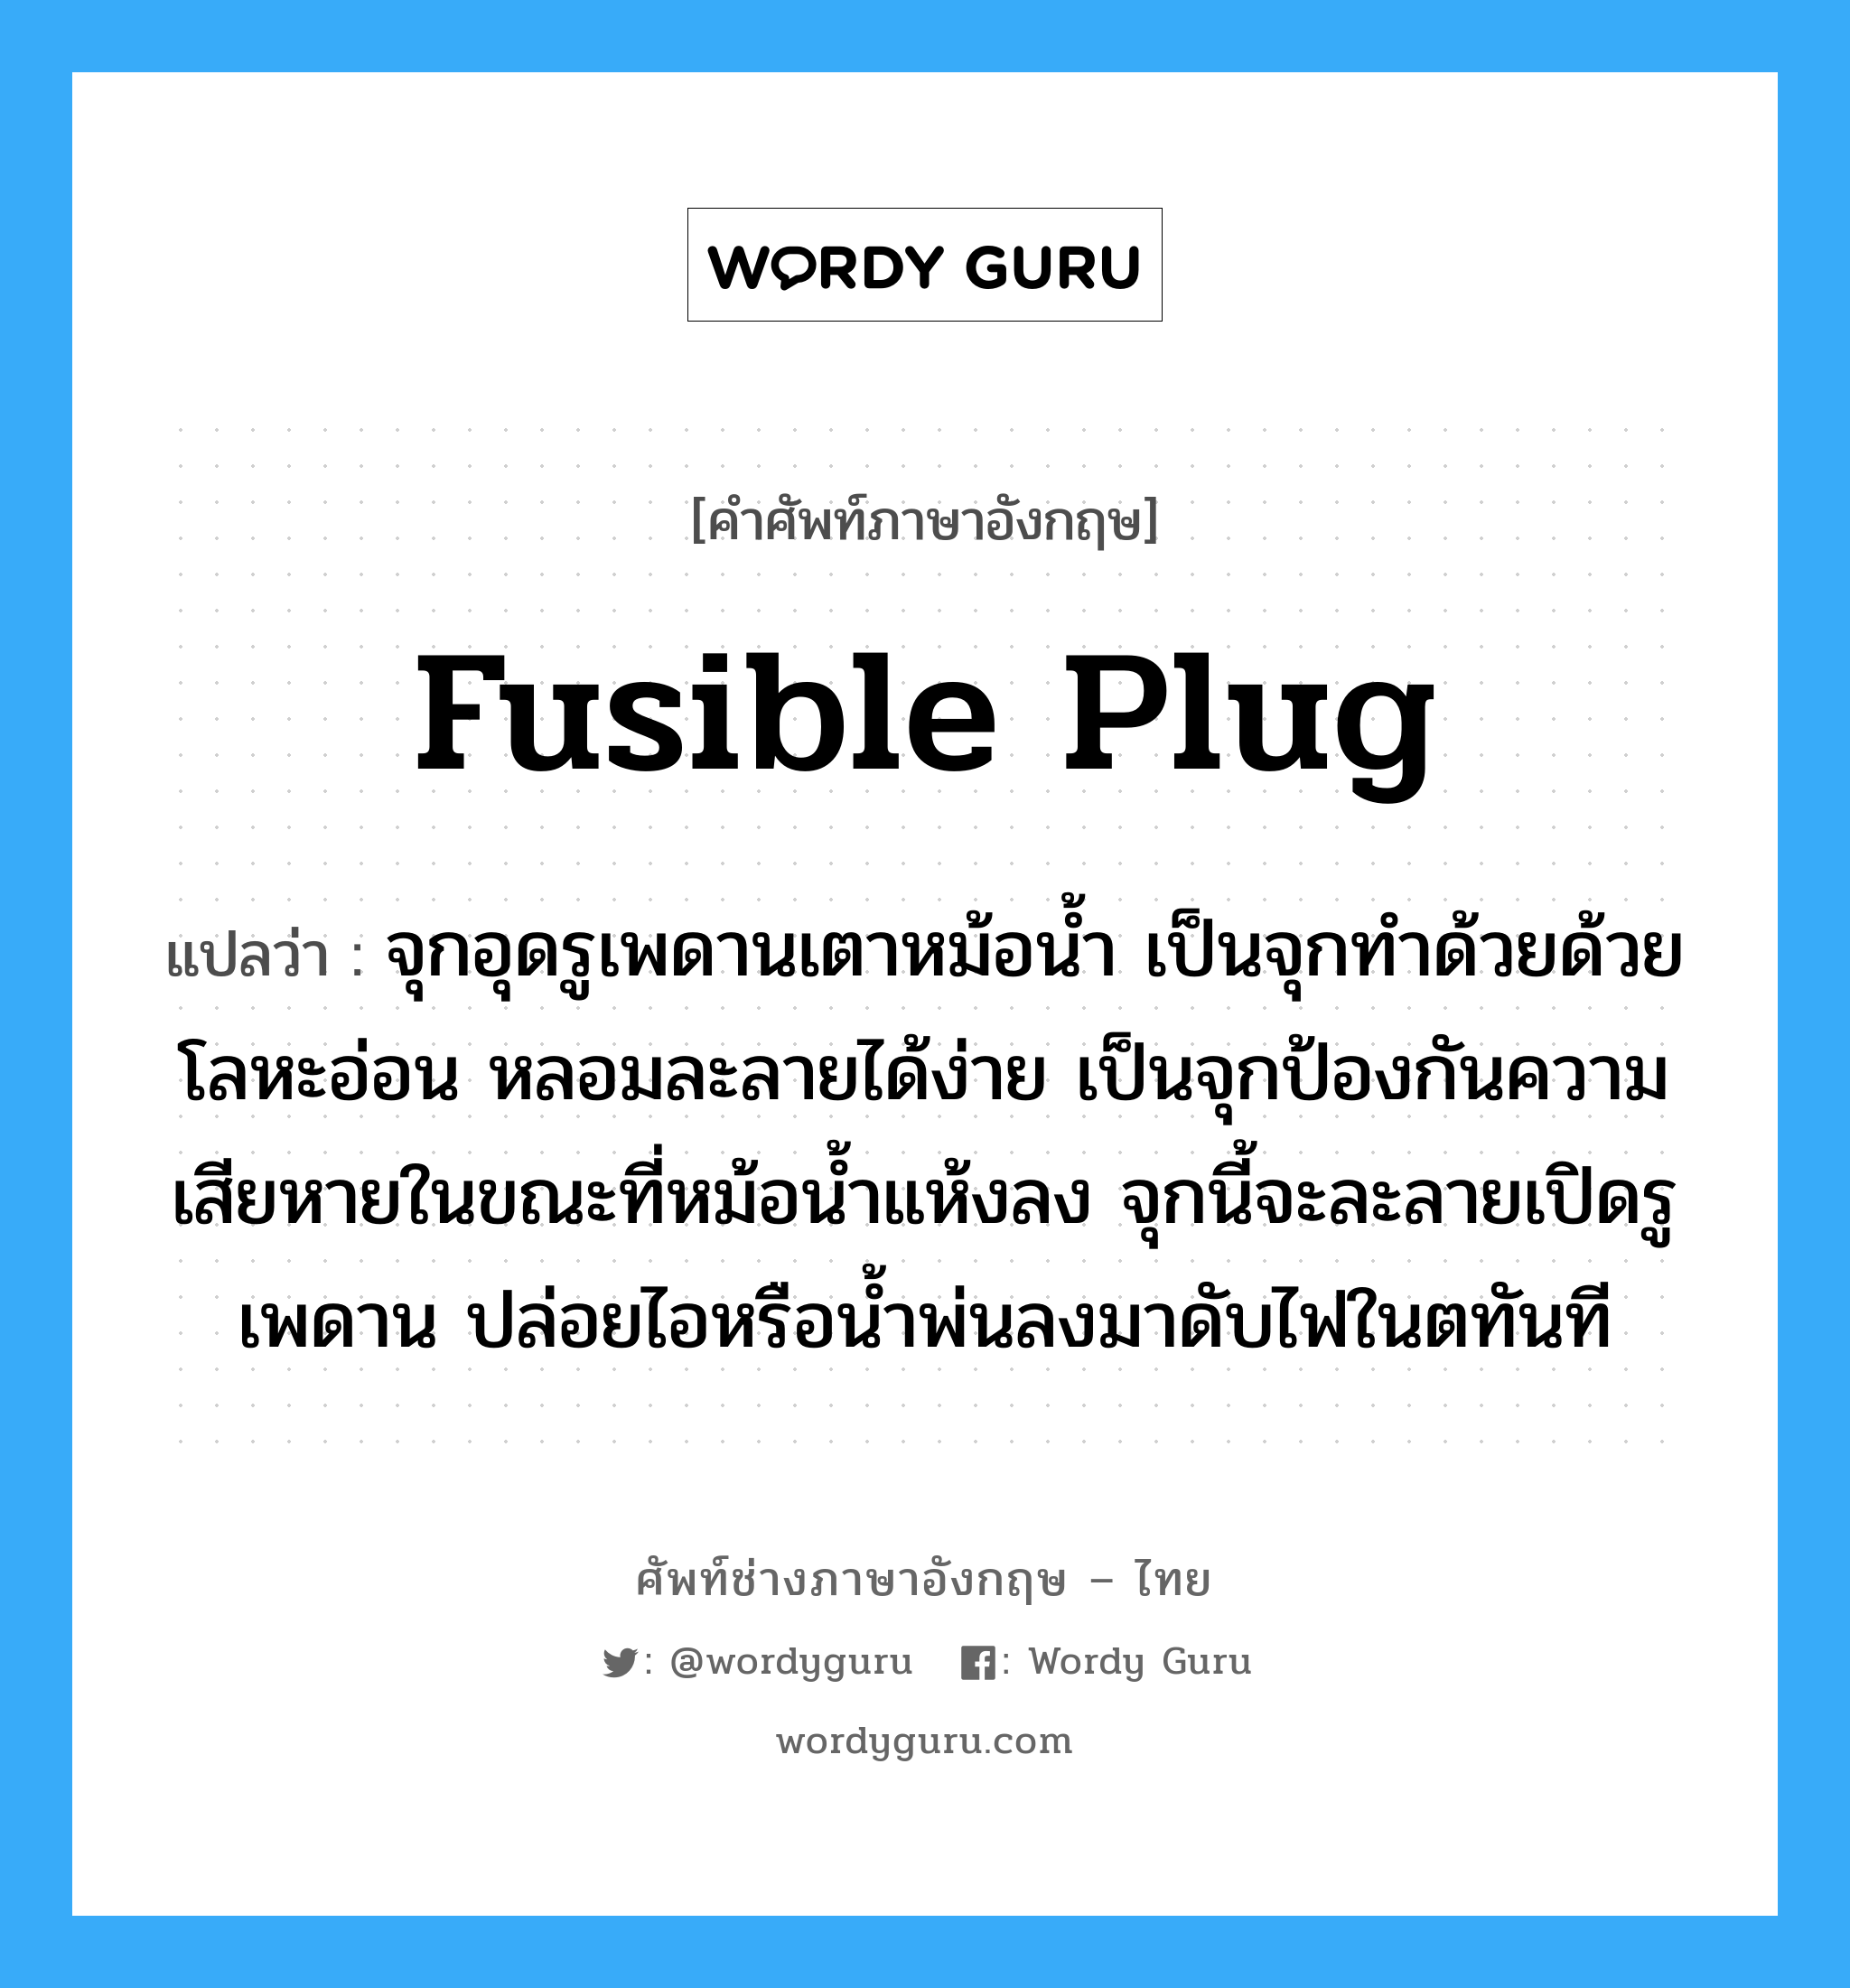 fusible plug แปลว่า?, คำศัพท์ช่างภาษาอังกฤษ - ไทย fusible plug คำศัพท์ภาษาอังกฤษ fusible plug แปลว่า จุกอุดรูเพดานเตาหม้อน้ำ เป็นจุกทำด้วยด้วยโลหะอ่อน หลอมละลายได้ง่าย เป็นจุกป้องกันความเสียหายในขณะที่หม้อน้ำแห้งลง จุกนี้จะละลายเปิดรูเพดาน ปล่อยไอหรือน้ำพ่นลงมาดับไฟในตทันที